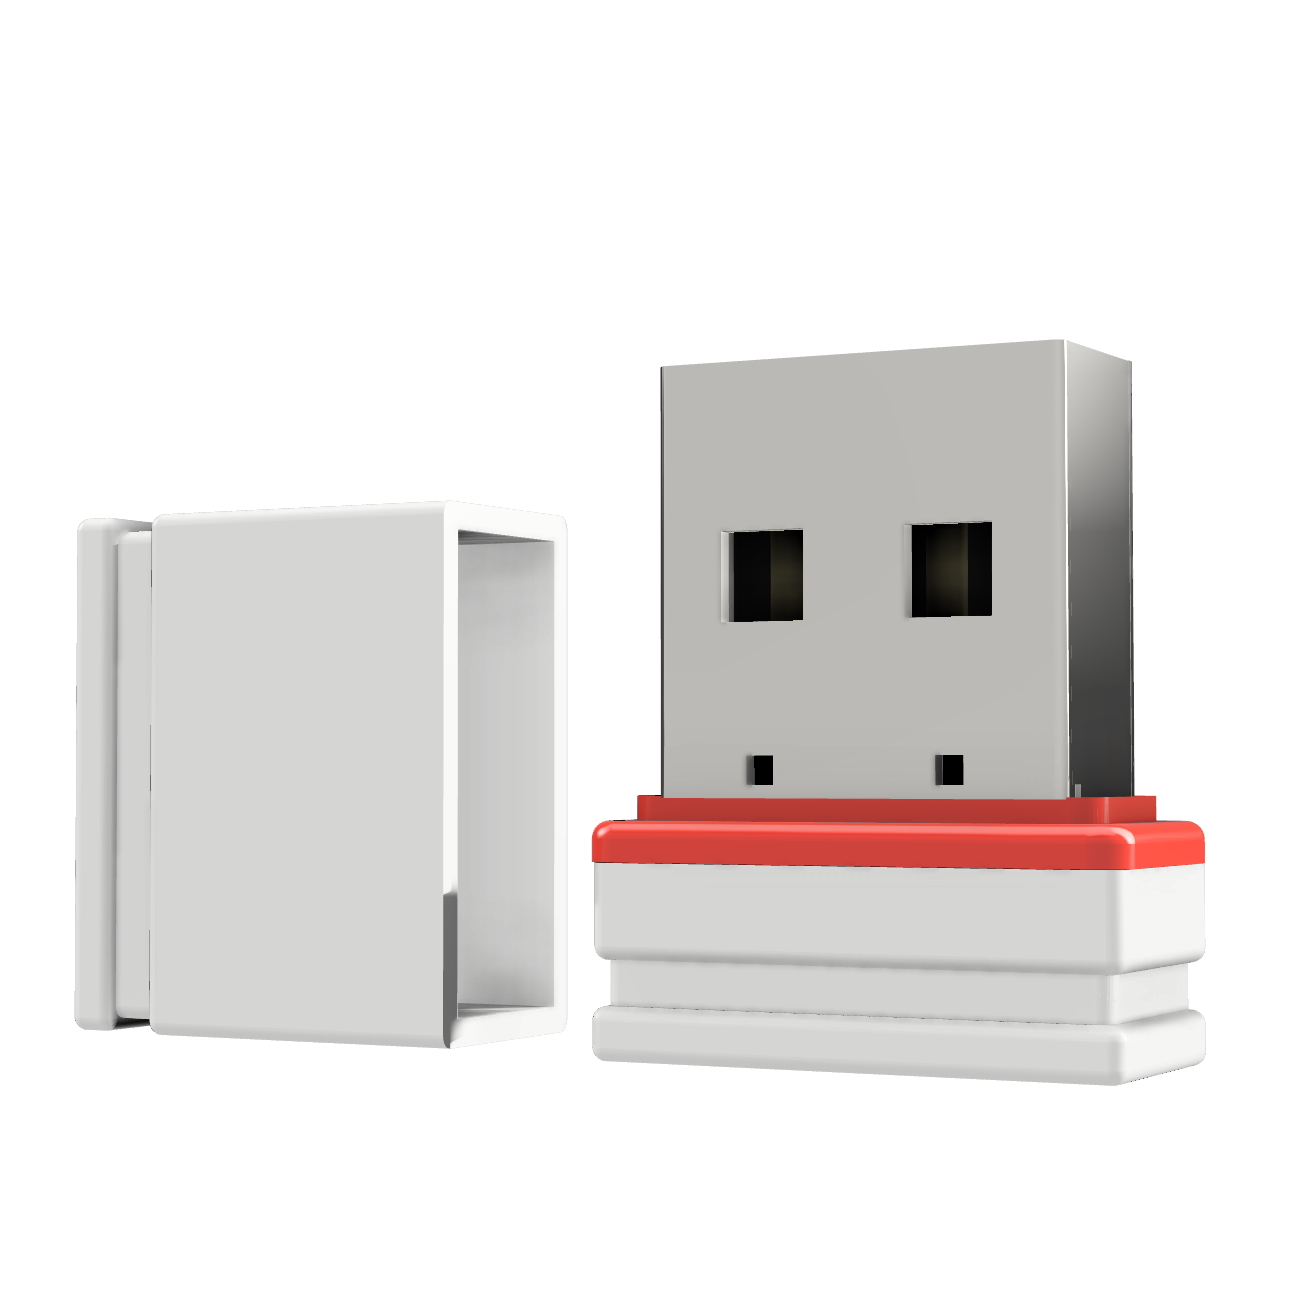 USB GERMANY GB) 1 USB-Stick Mini (Weiss/Rot, P1 ®ULTRA